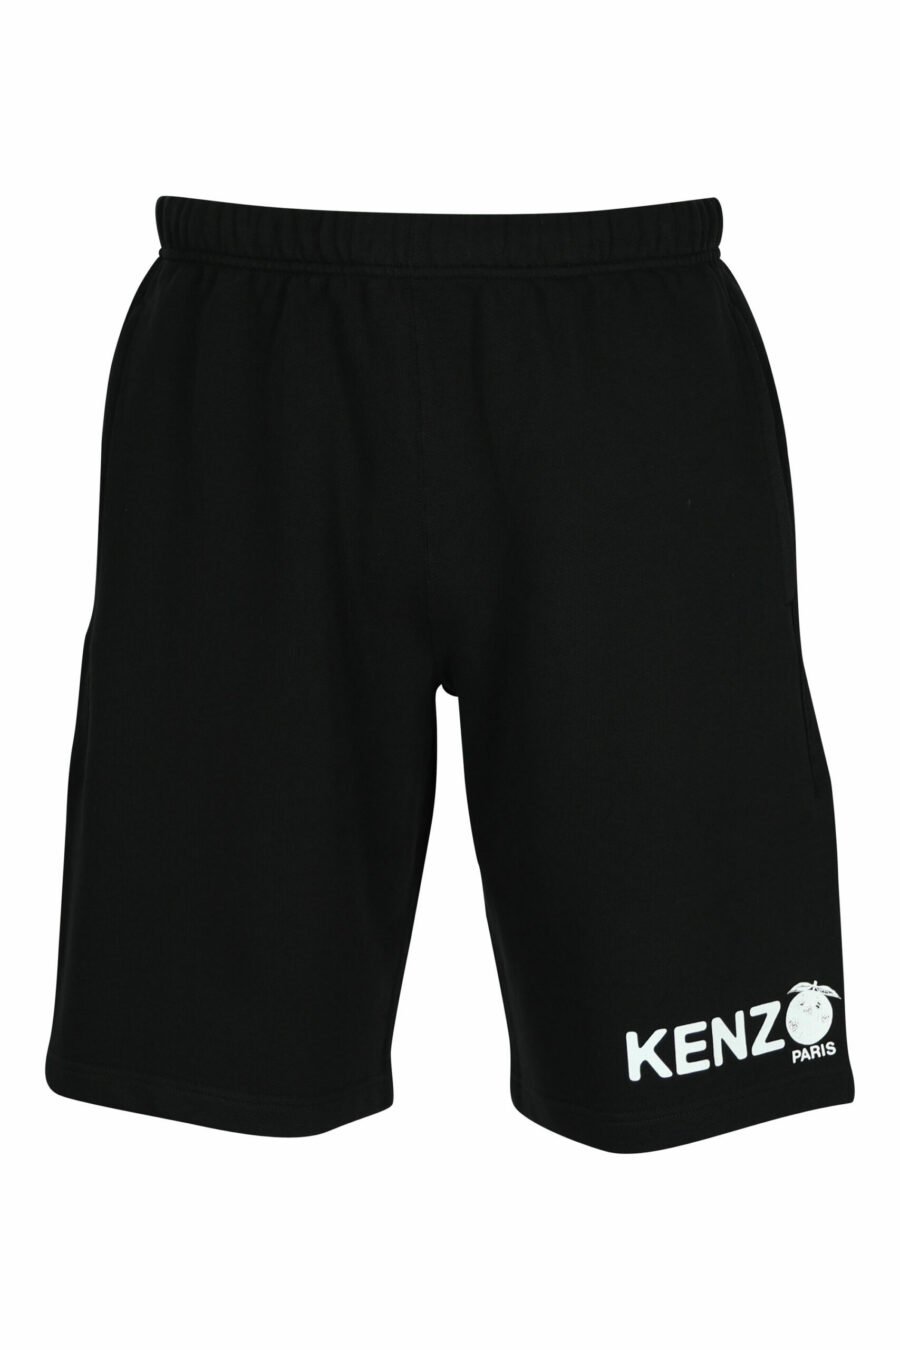 Tracksuit bottoms black shorts with minilogue "kenzo orange" - 3612230620872 scaled